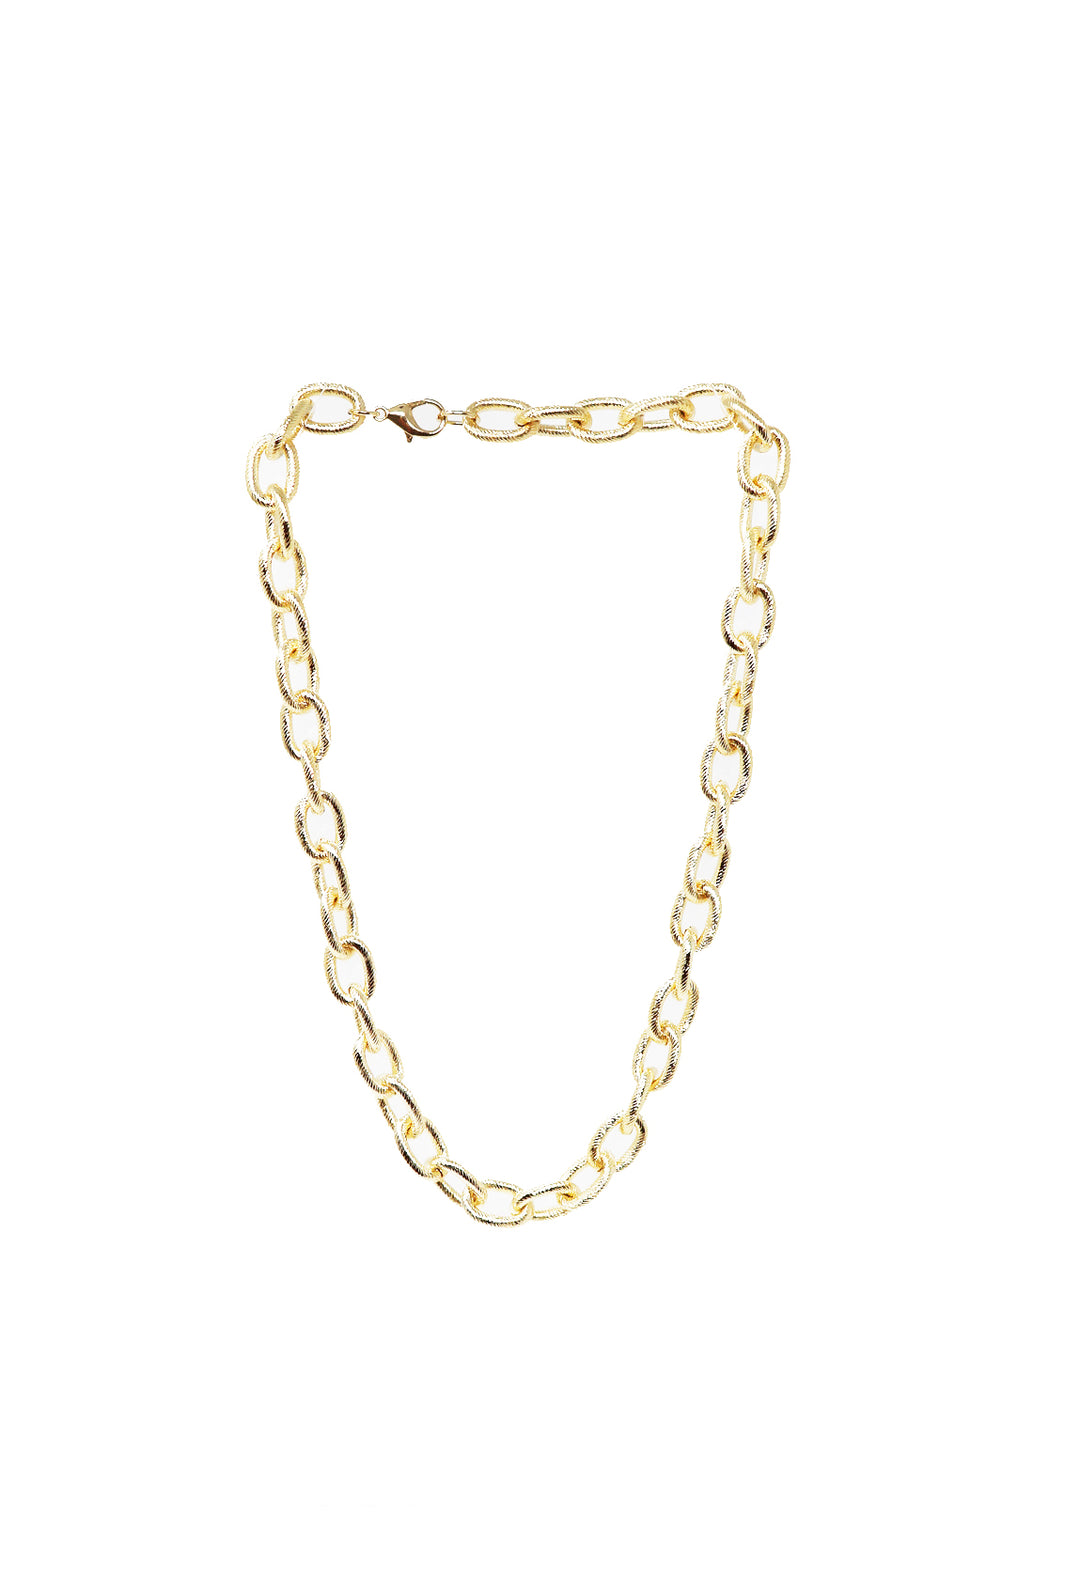 Gold Link Necklace - Gabrielle's Biloxi